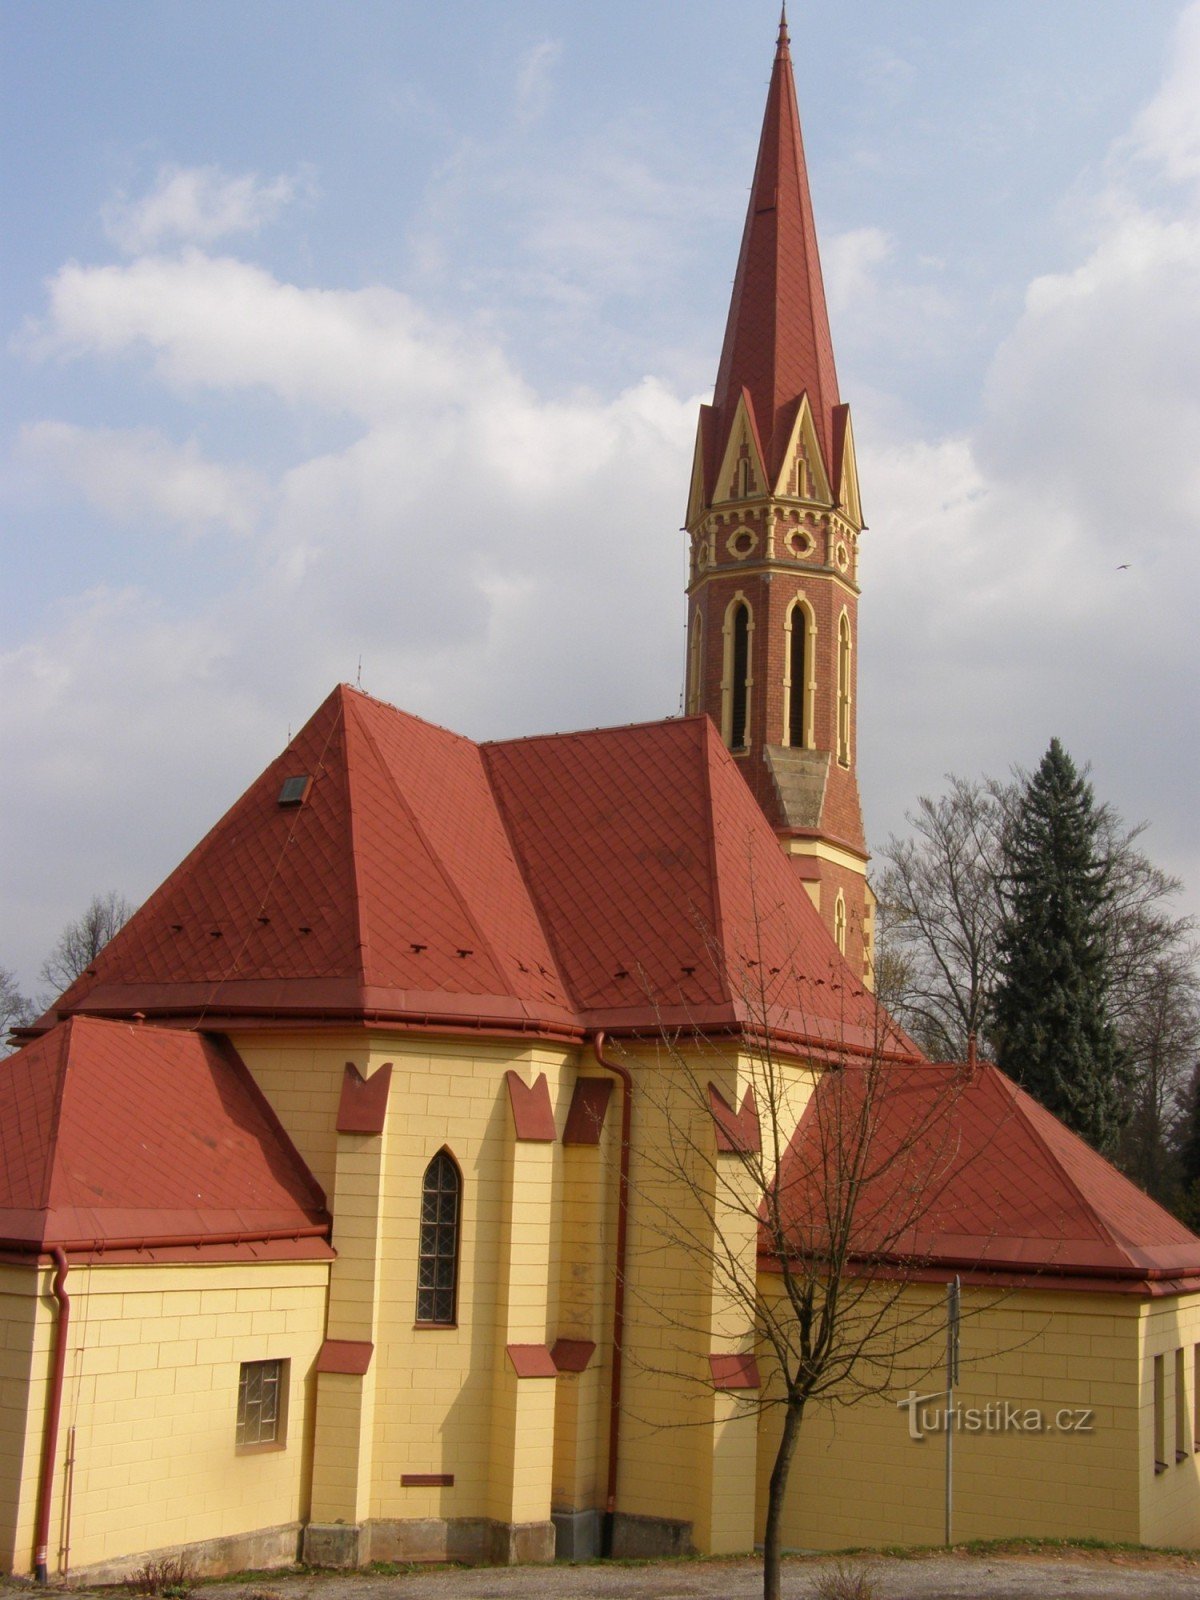 Trutnov - evangelical church, hall of Bohuslav Martinů